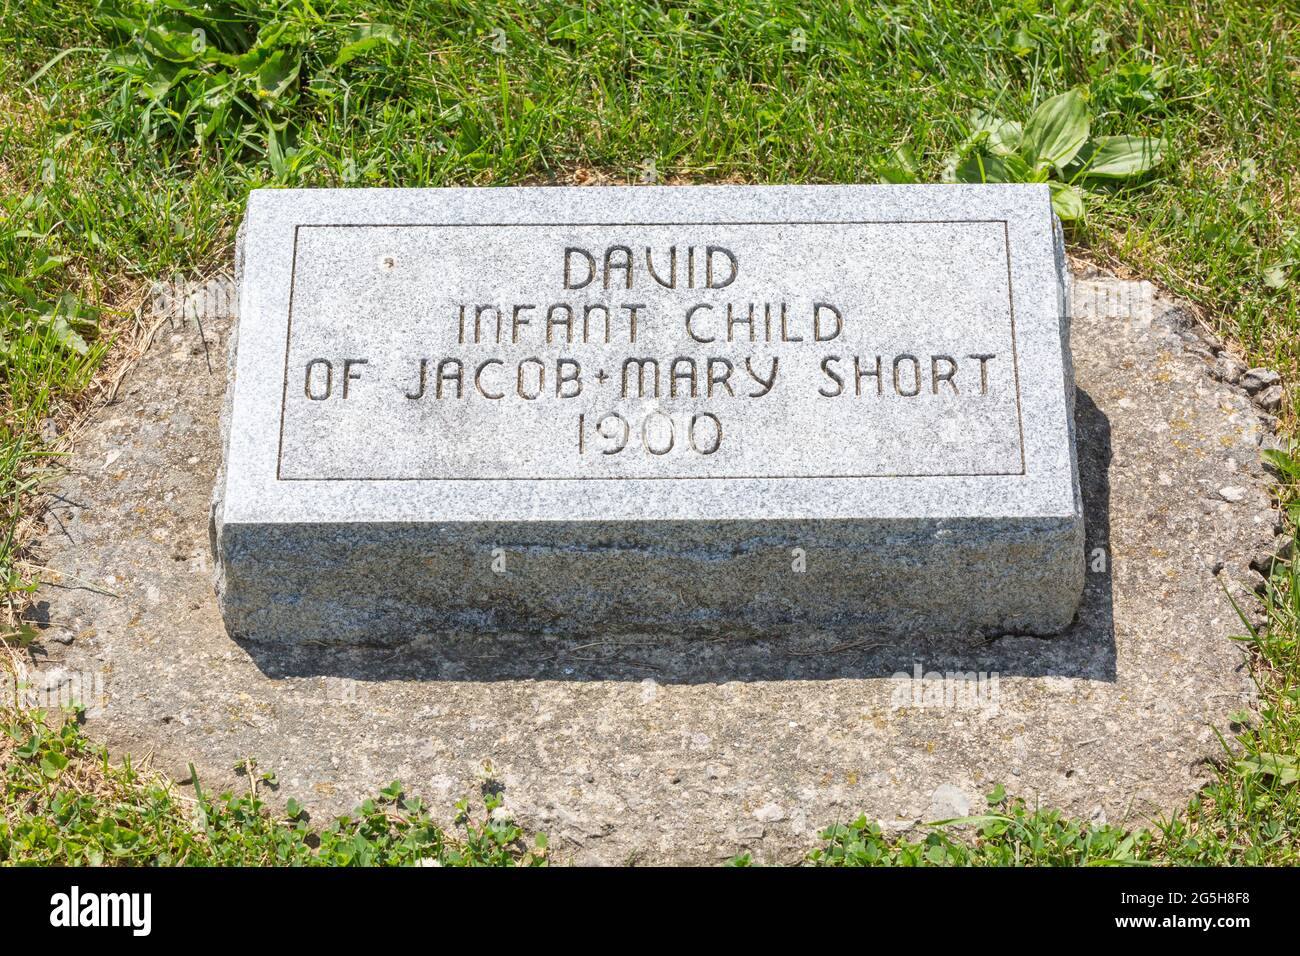 La tumba del niño David Short en el cementerio Yaggy cerca de Grabill, Indiana, Estados Unidos. Foto de stock